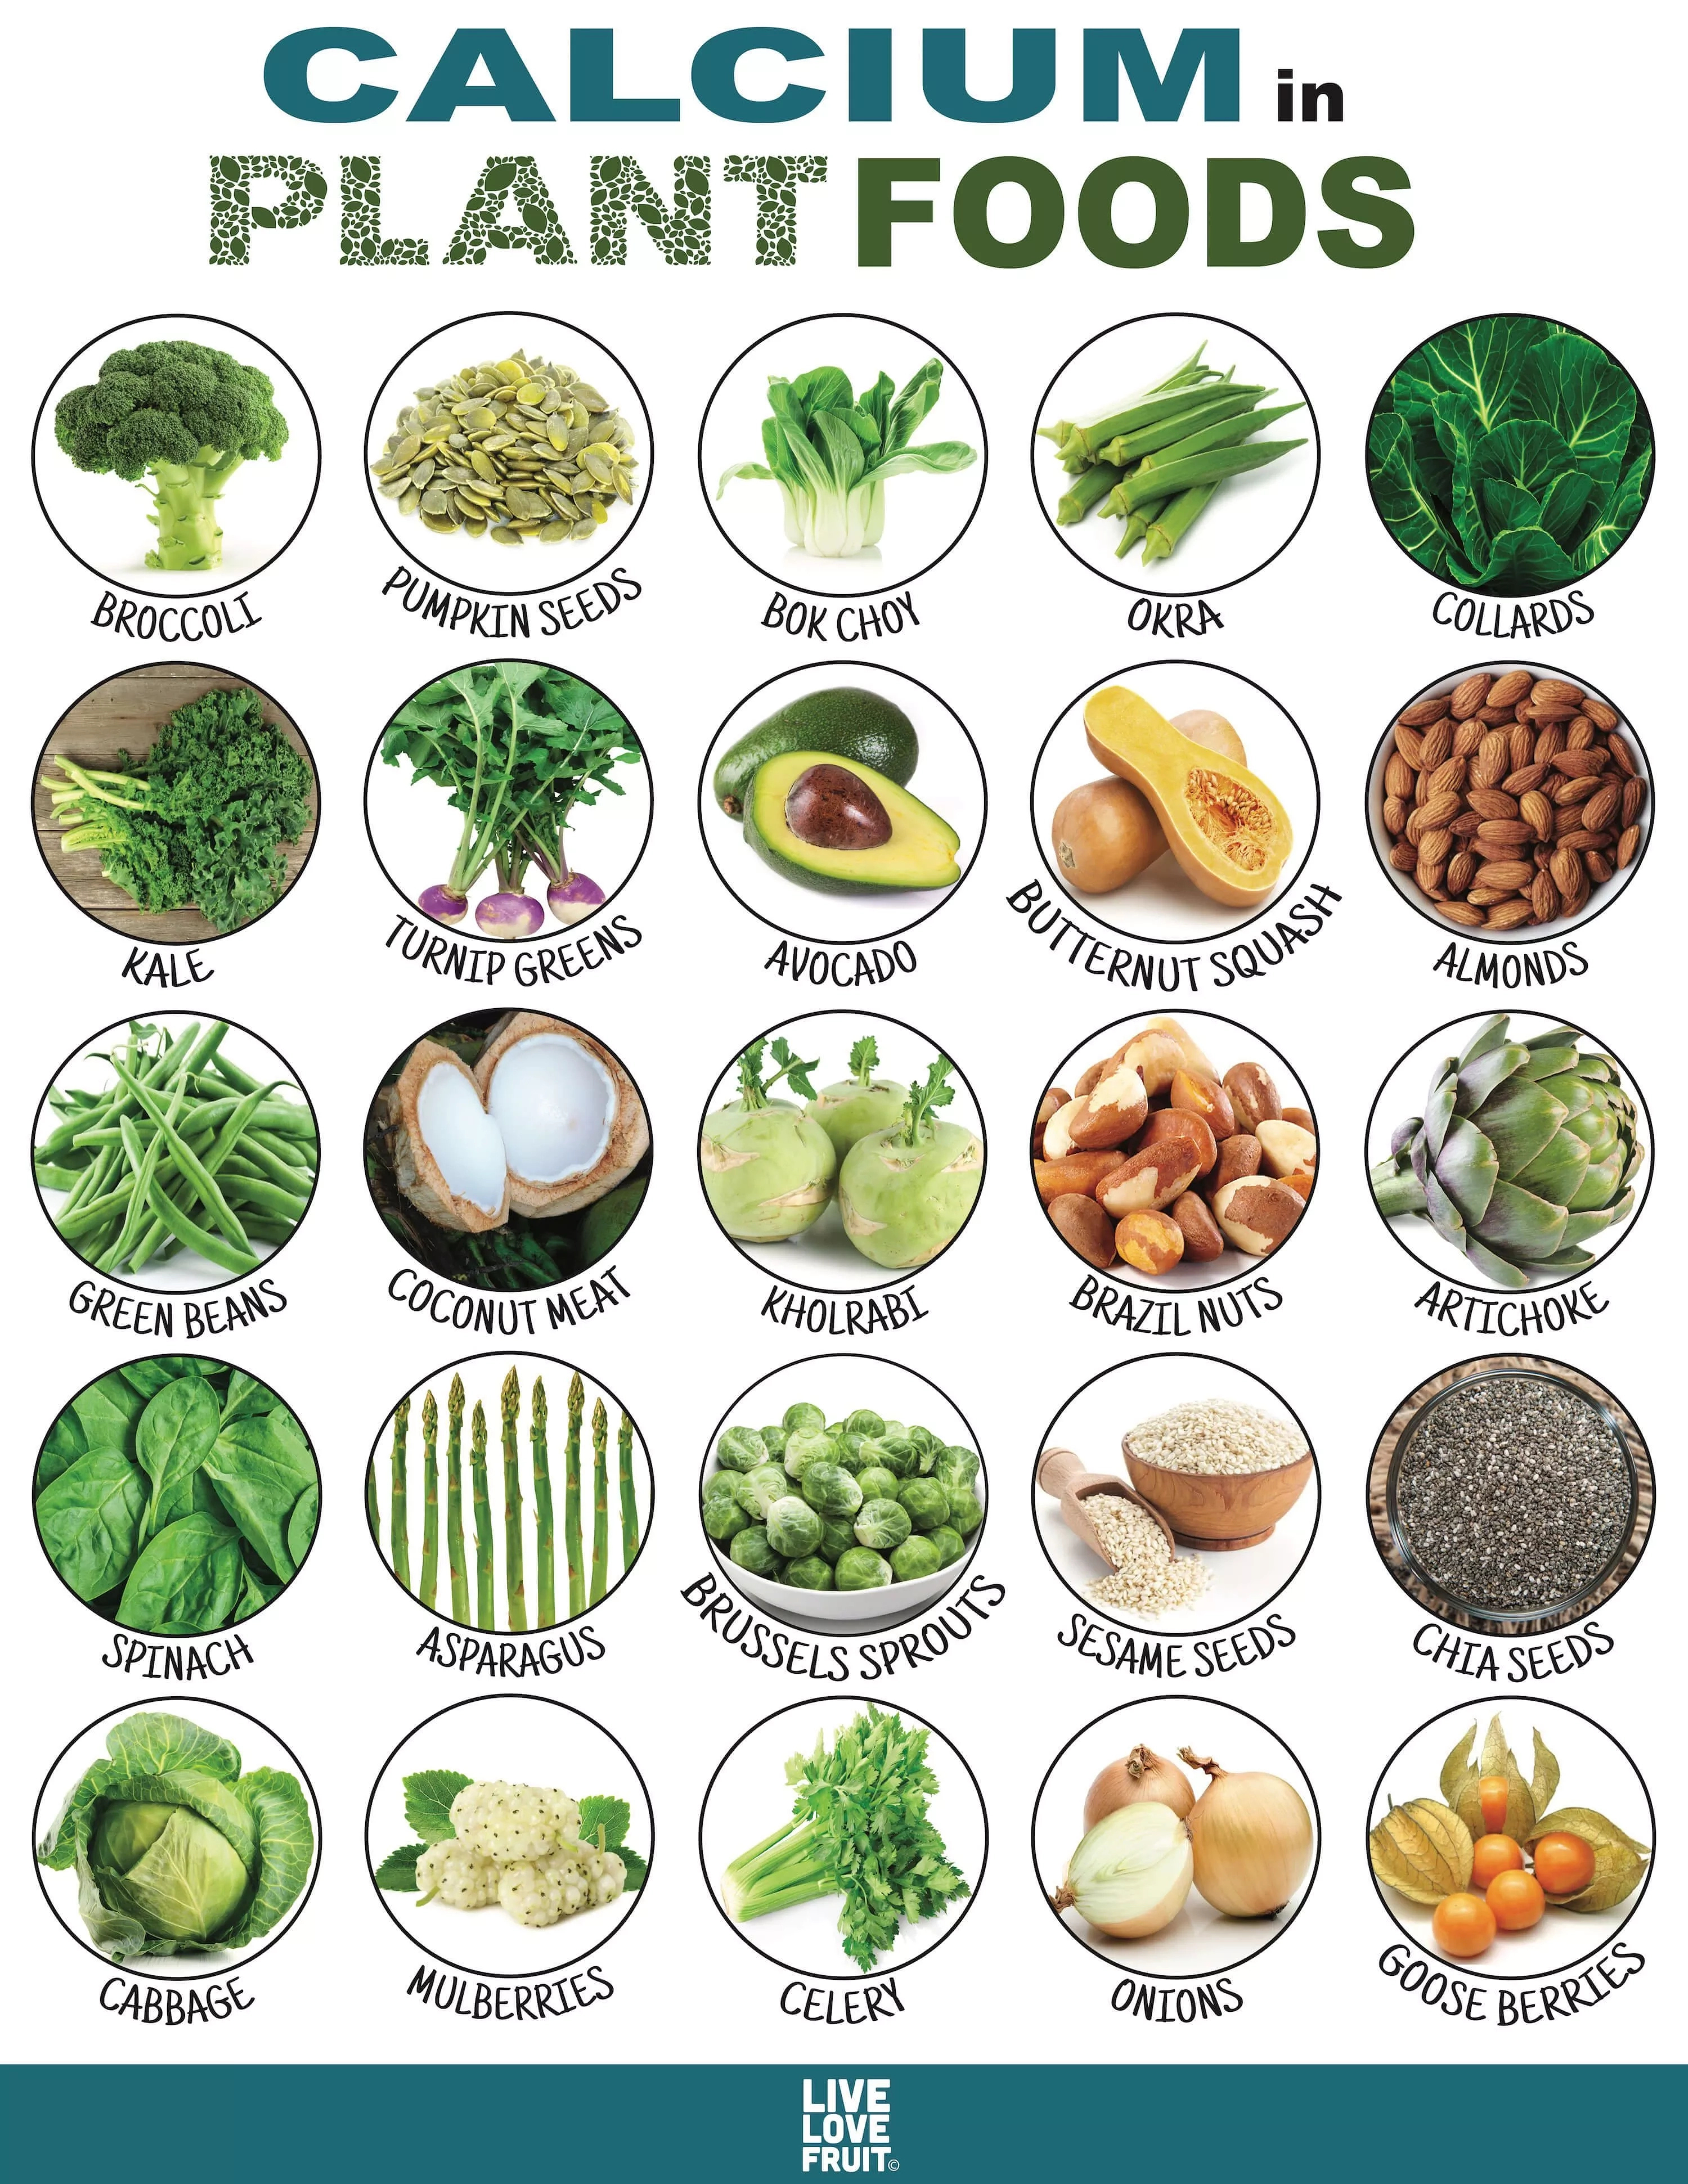 Food Sources of Calcium